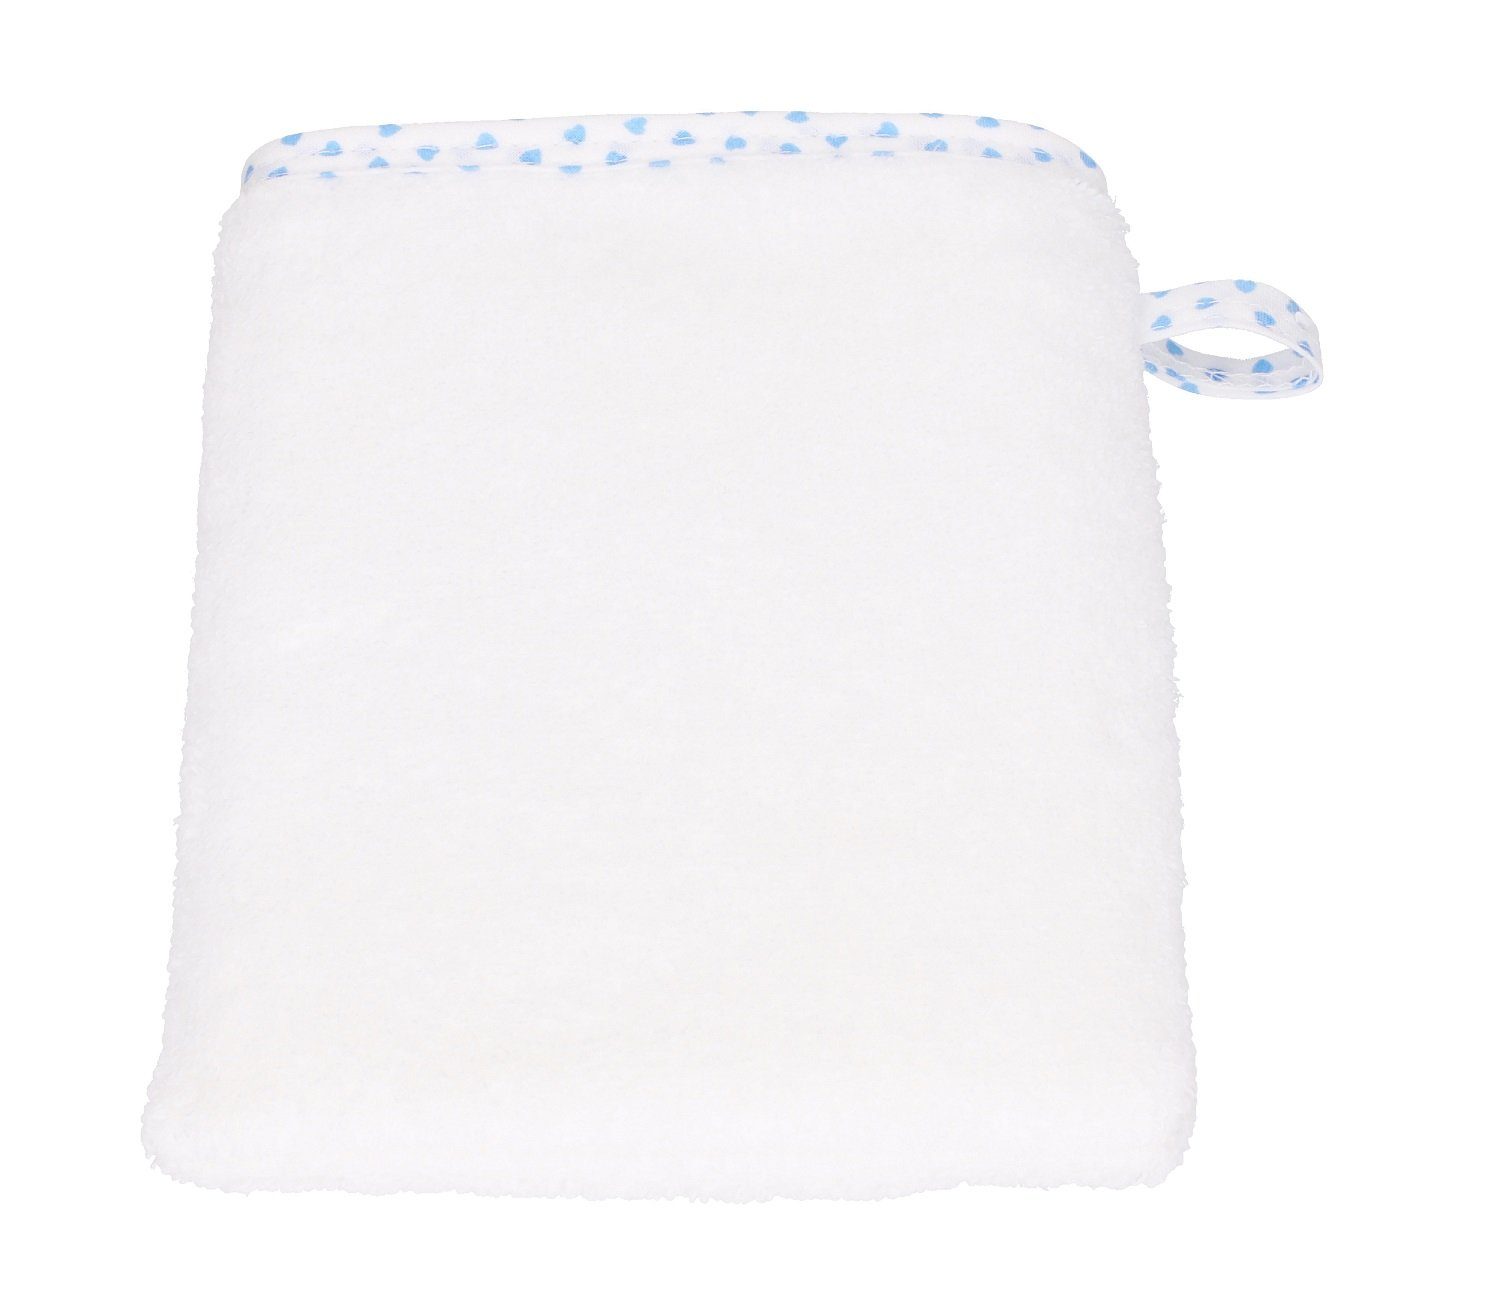 Lätzchen 3tlg. Betz Baumwolle weiß-blau Herzchen 100% Waschhandschuh, 1 Kapuzenhandtuch 1 1 Kinderbadetuch Babyset